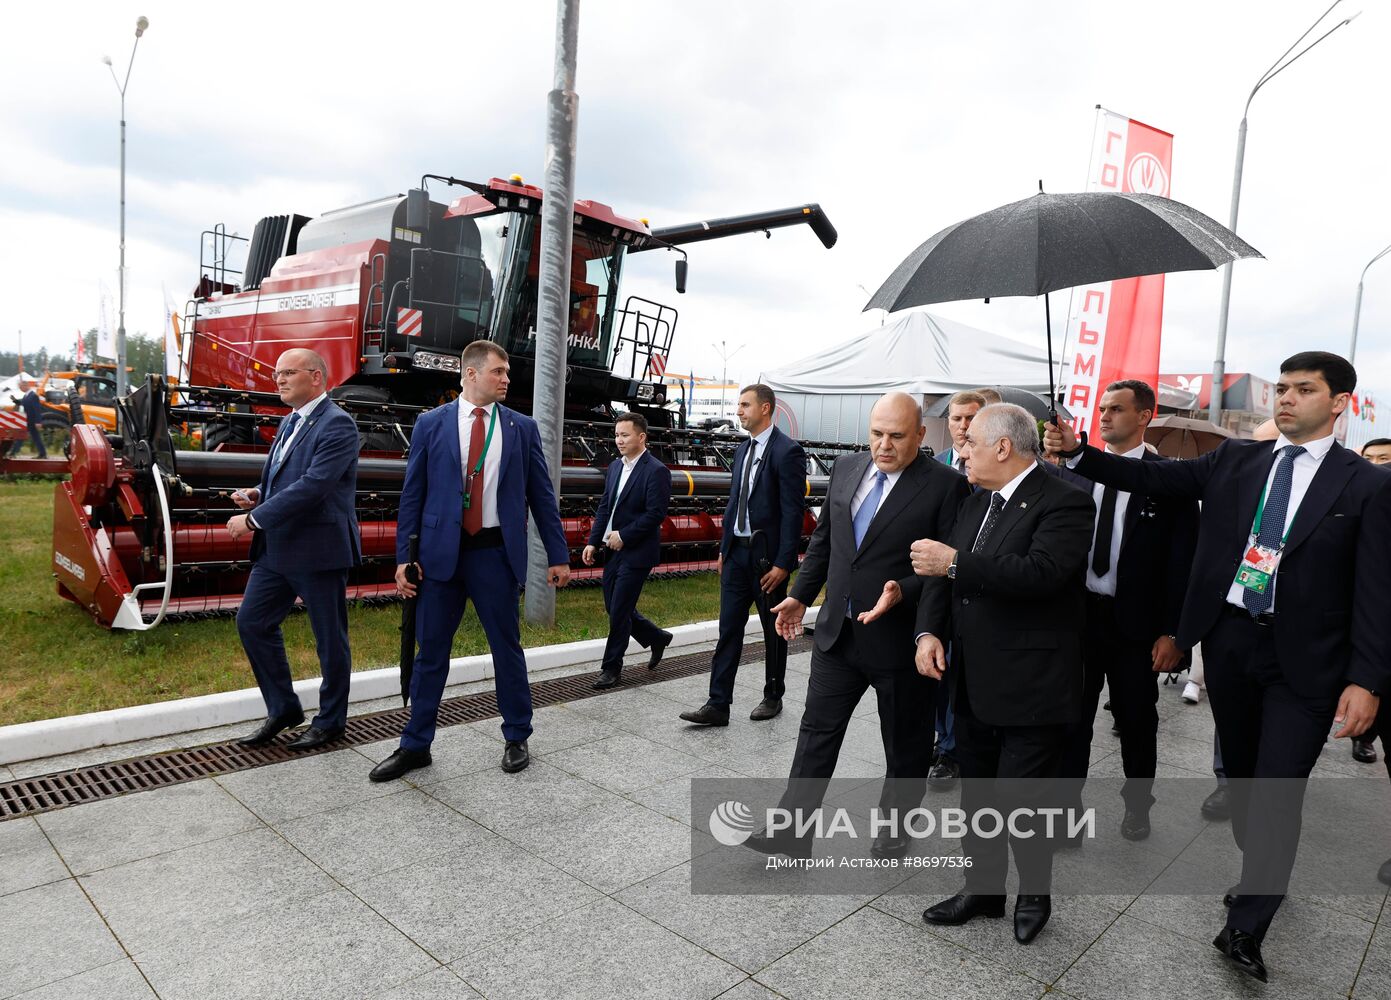 Визит премьер-министра Михаила Мишустина в Белоруссию